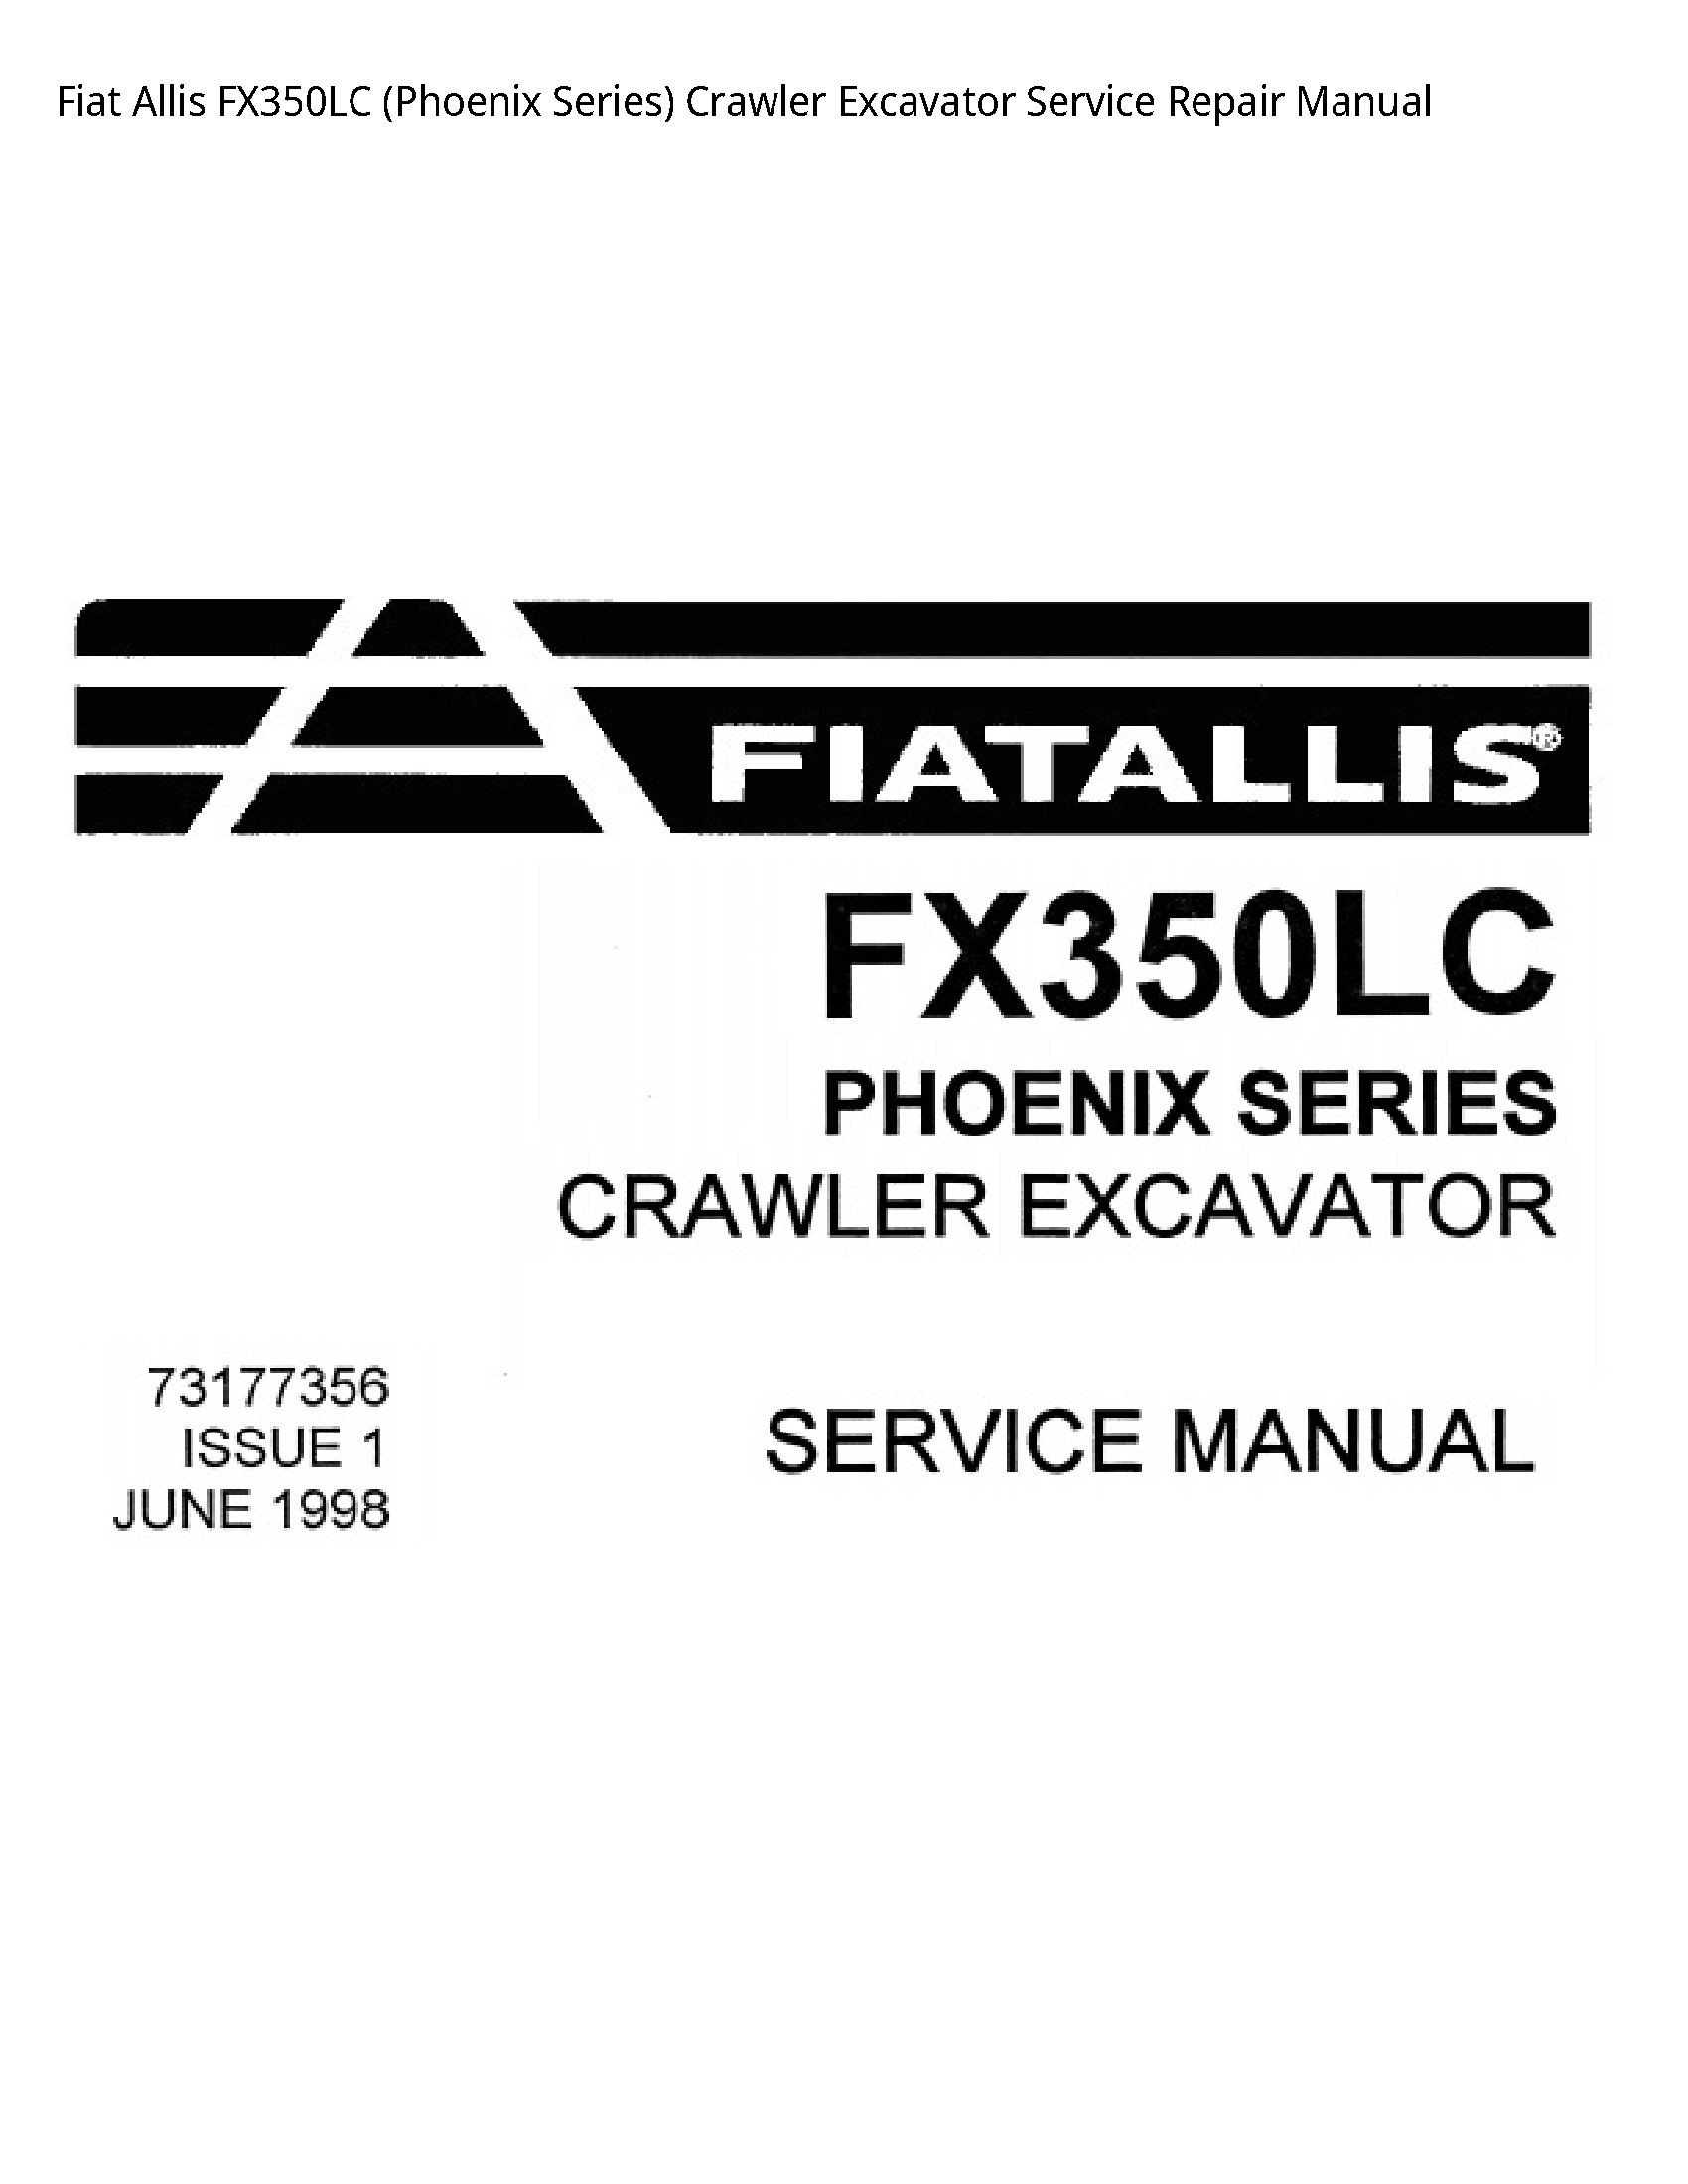 Fiat Allis FX350LC (Phoenix Series) Crawler Excavator manual